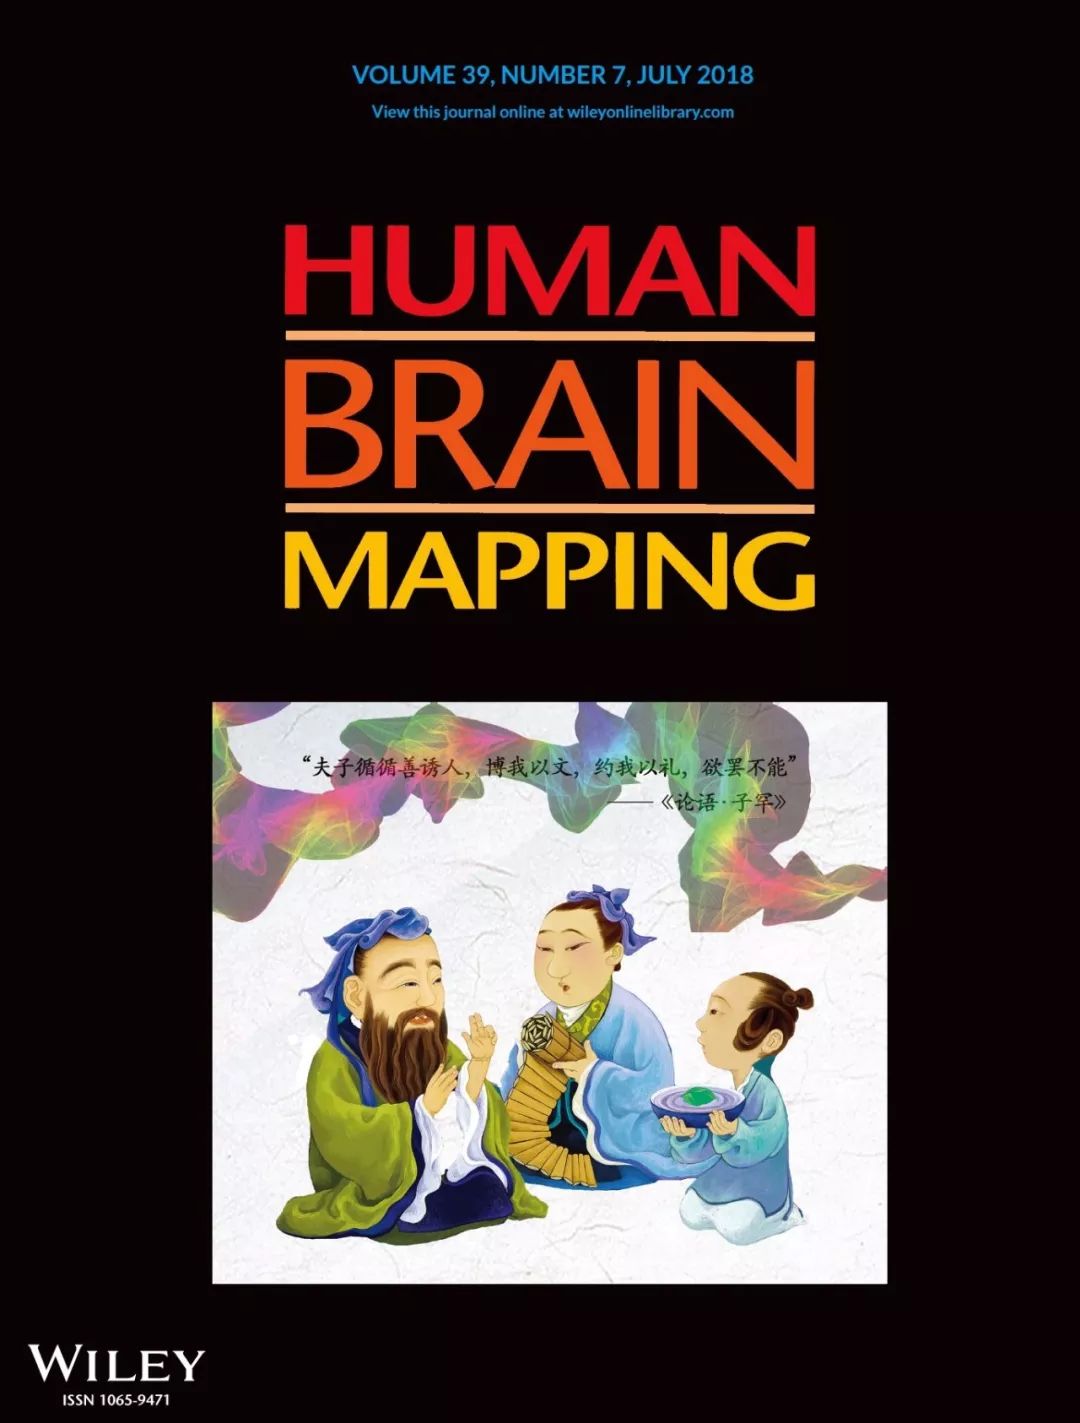 教得好不好 关键看老师和学生脑子 同步 没有 Human Brain Mapping封面论文揭示教与学的神经同步机制